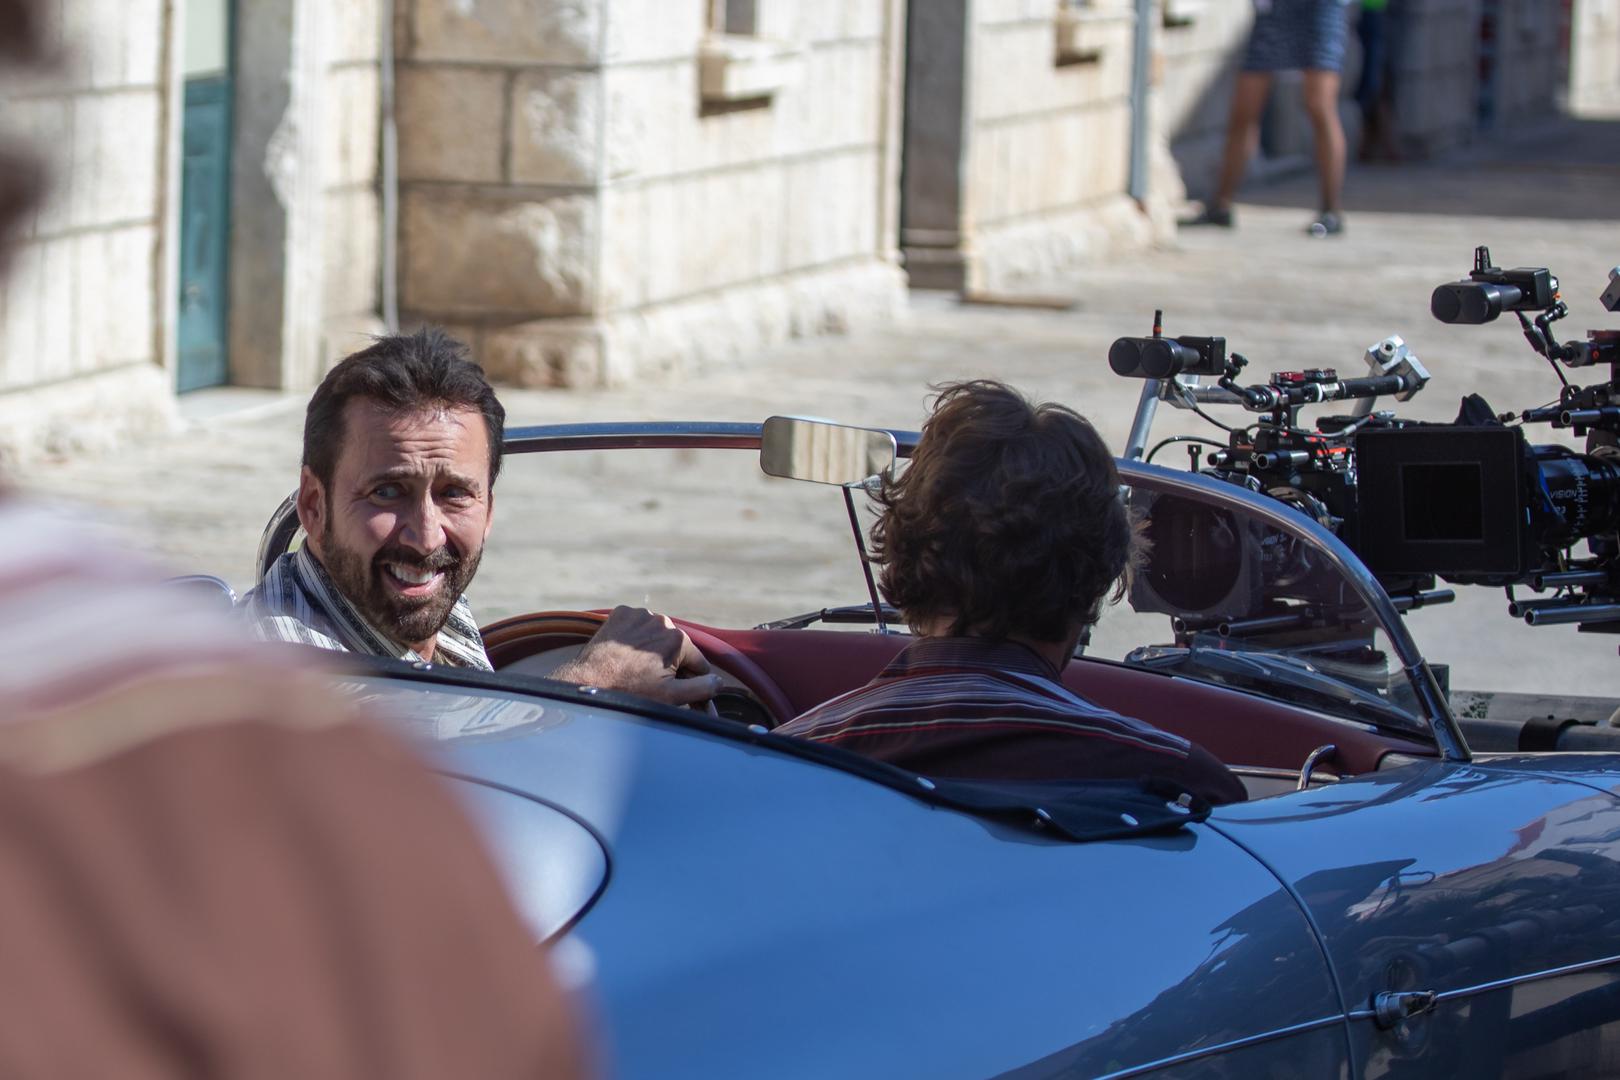 Naime, svojim je objektivom ponovno ulovio protagonista Nicolasa Cagea i njegovog kolegu Pedra Pascala, ali ovaj put u Cavtatu, gdje se snimanje premjestilo nakon Dubrovnika.